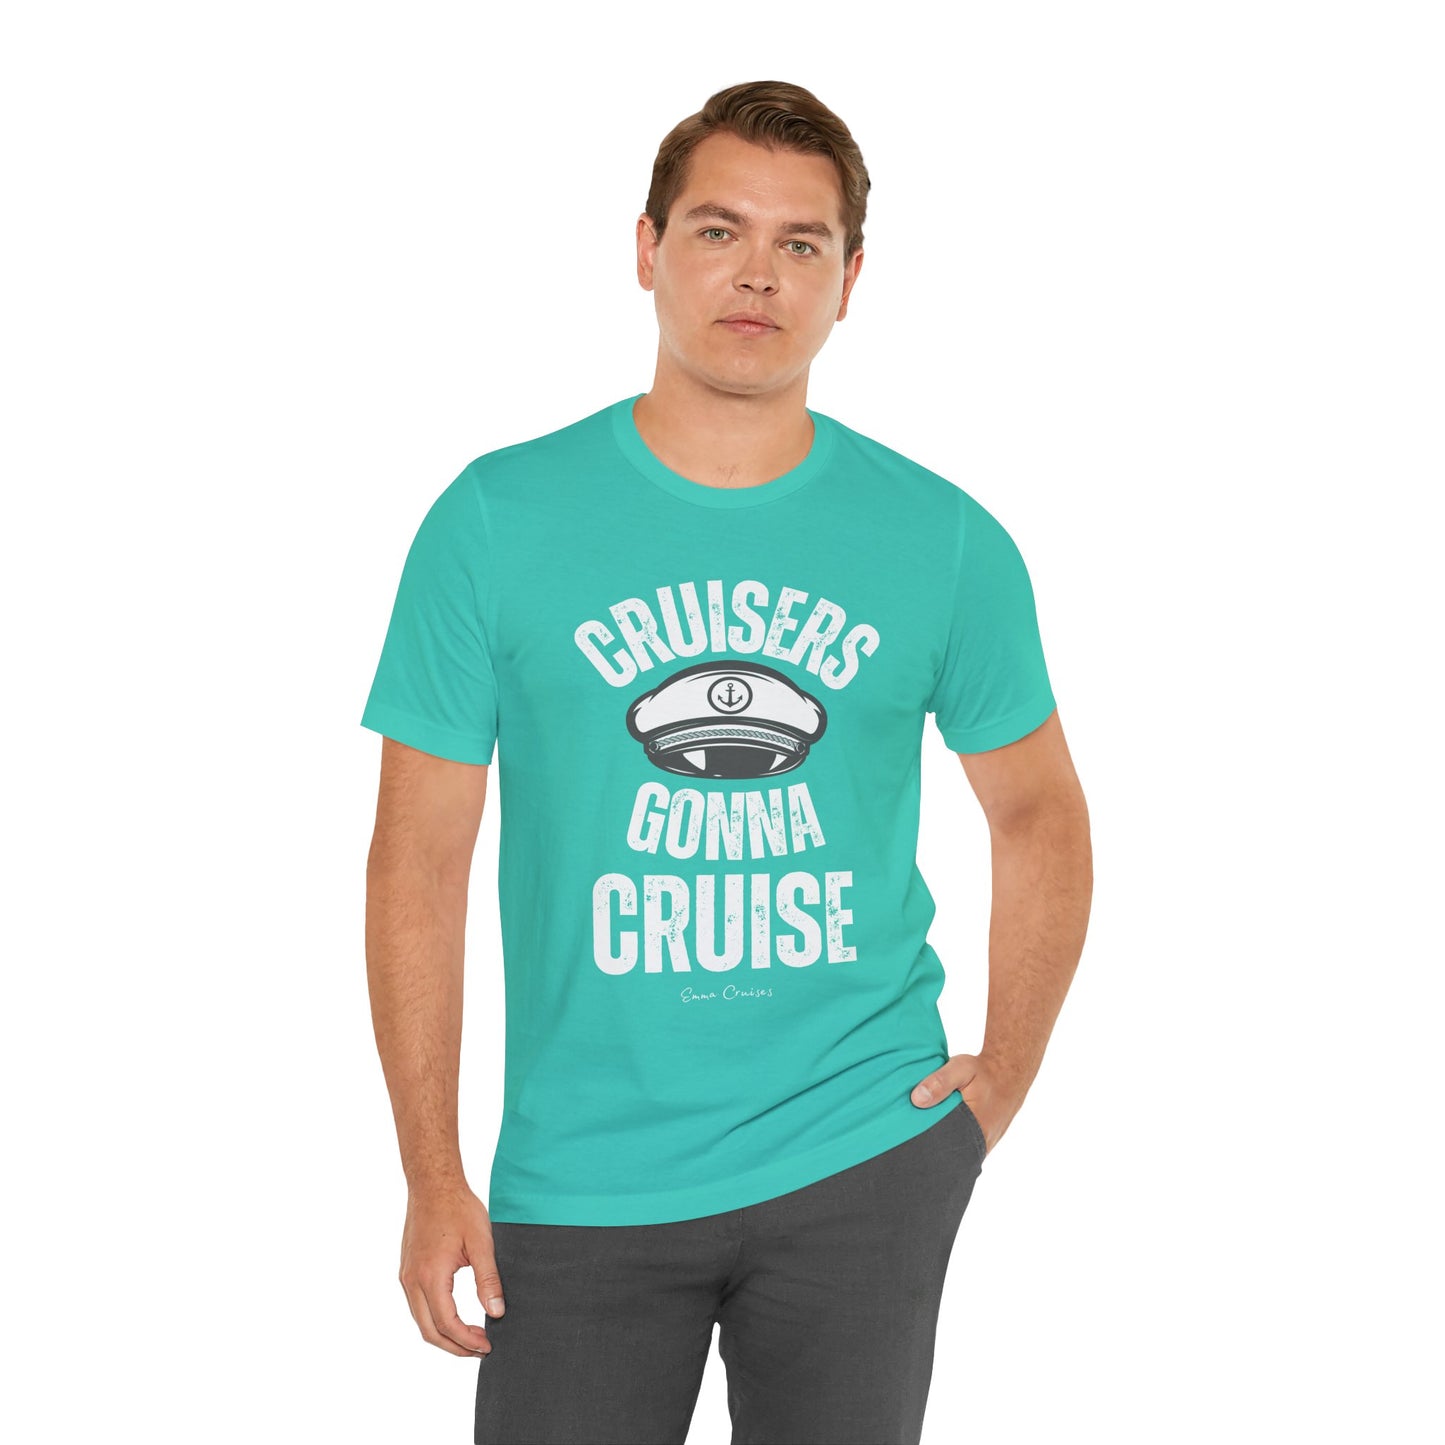 Cruisers Gonna Cruise - UNISEX T-Shirt (UK)